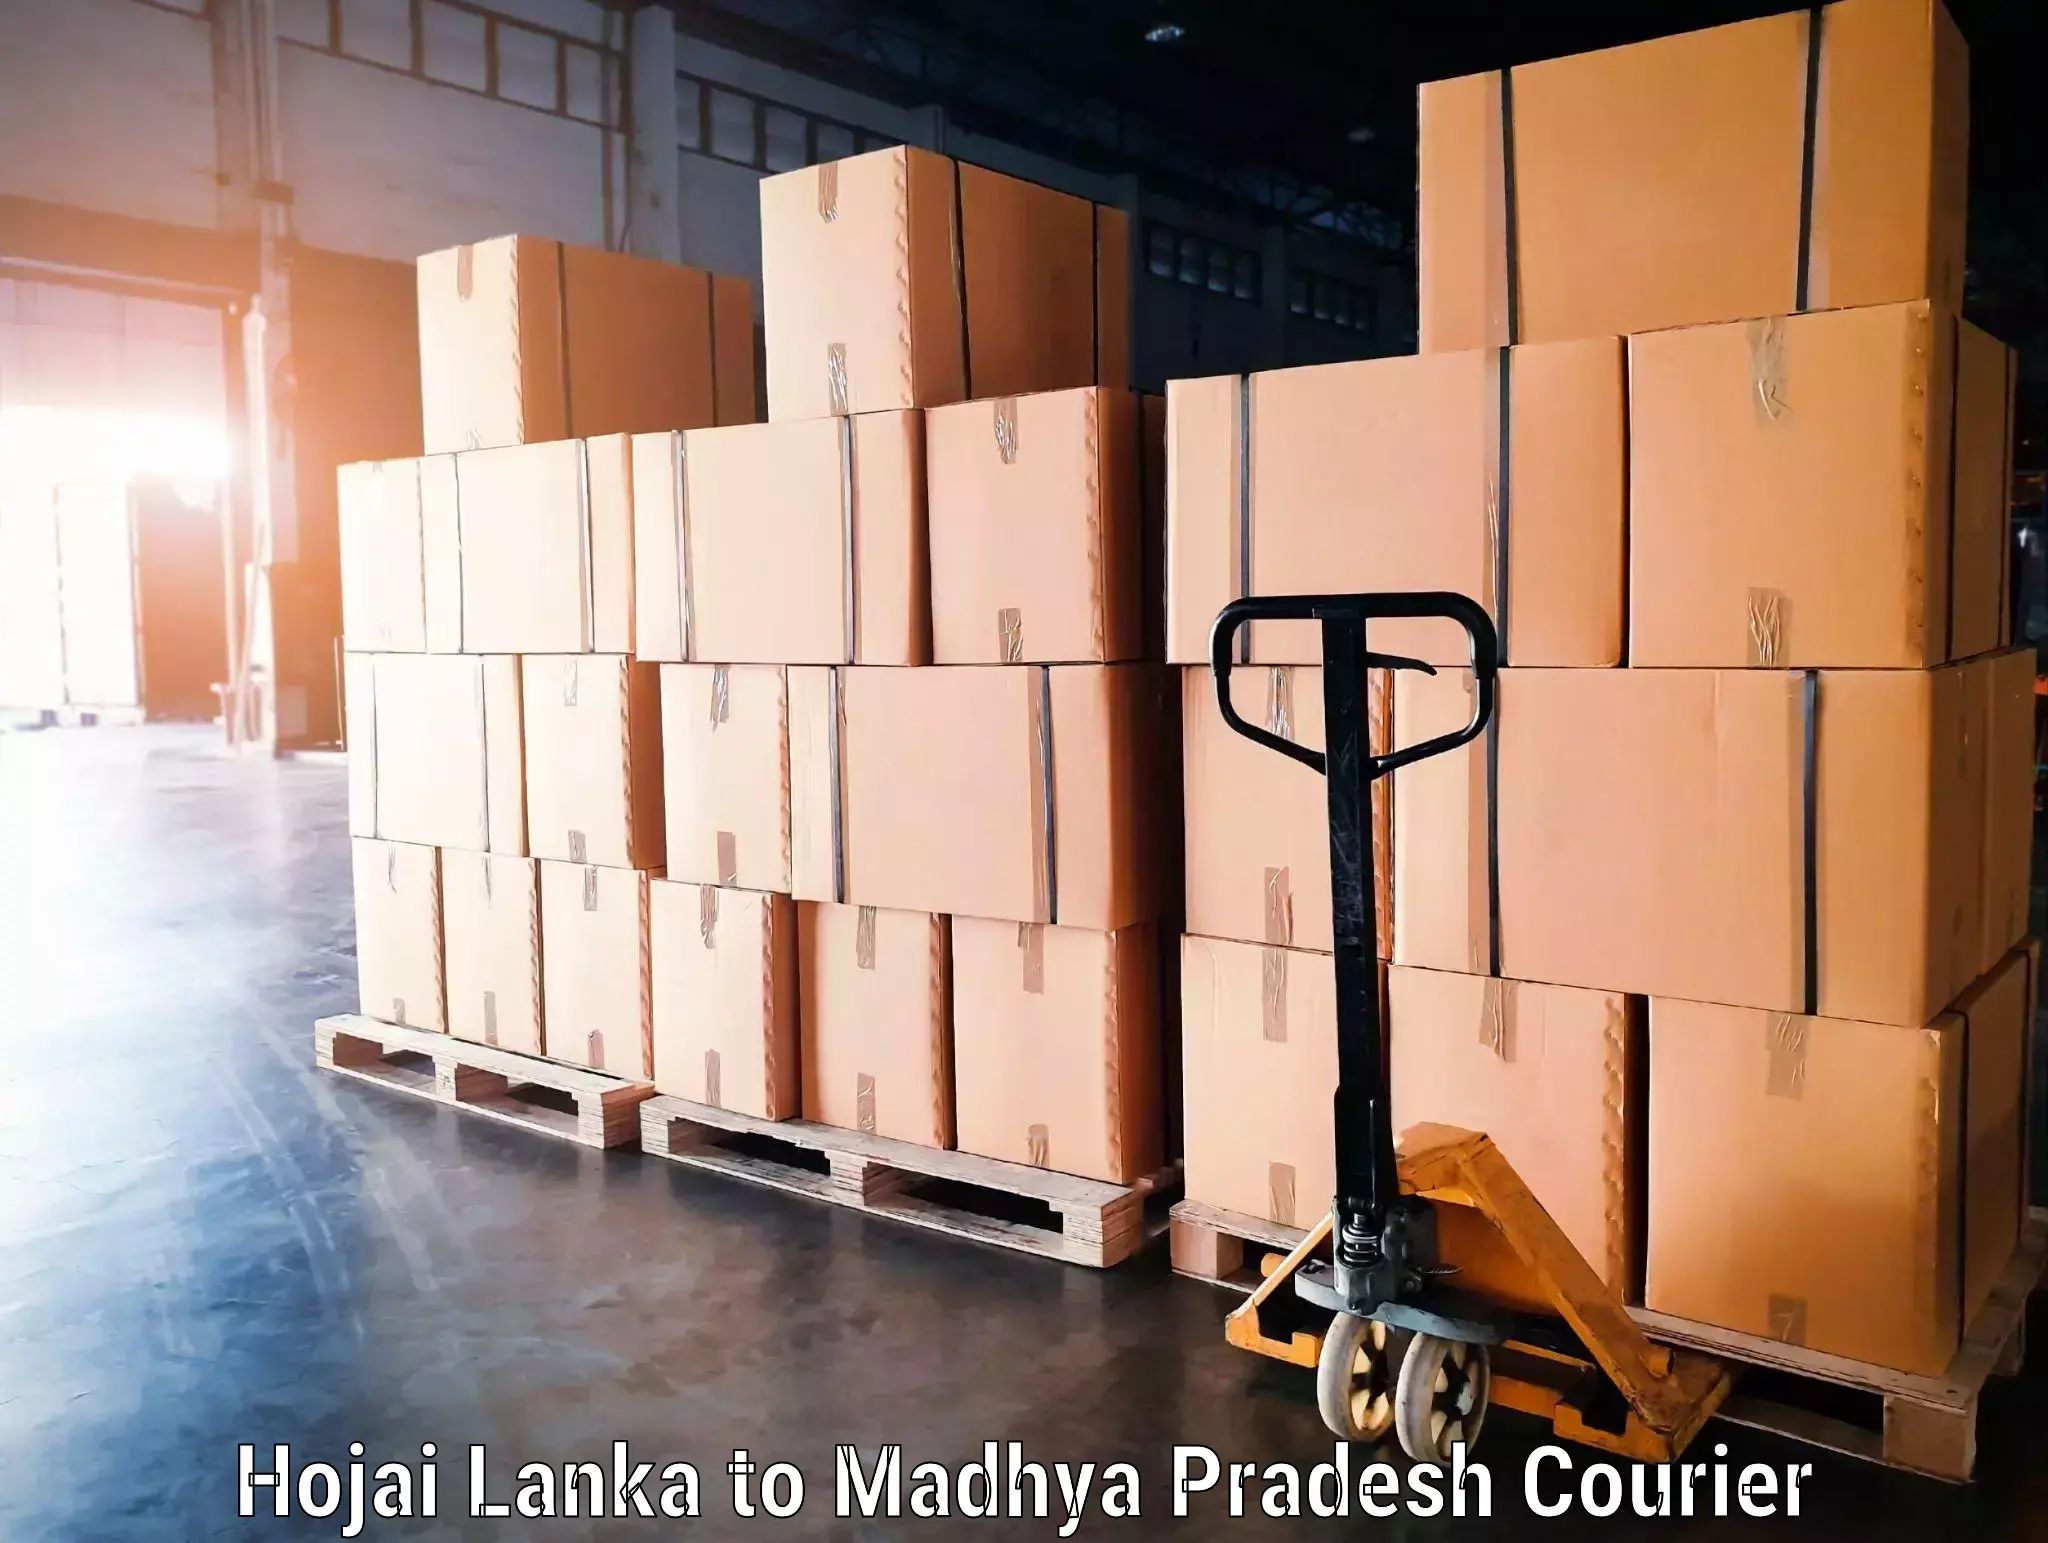 Rural baggage transport Hojai Lanka to Madhya Pradesh